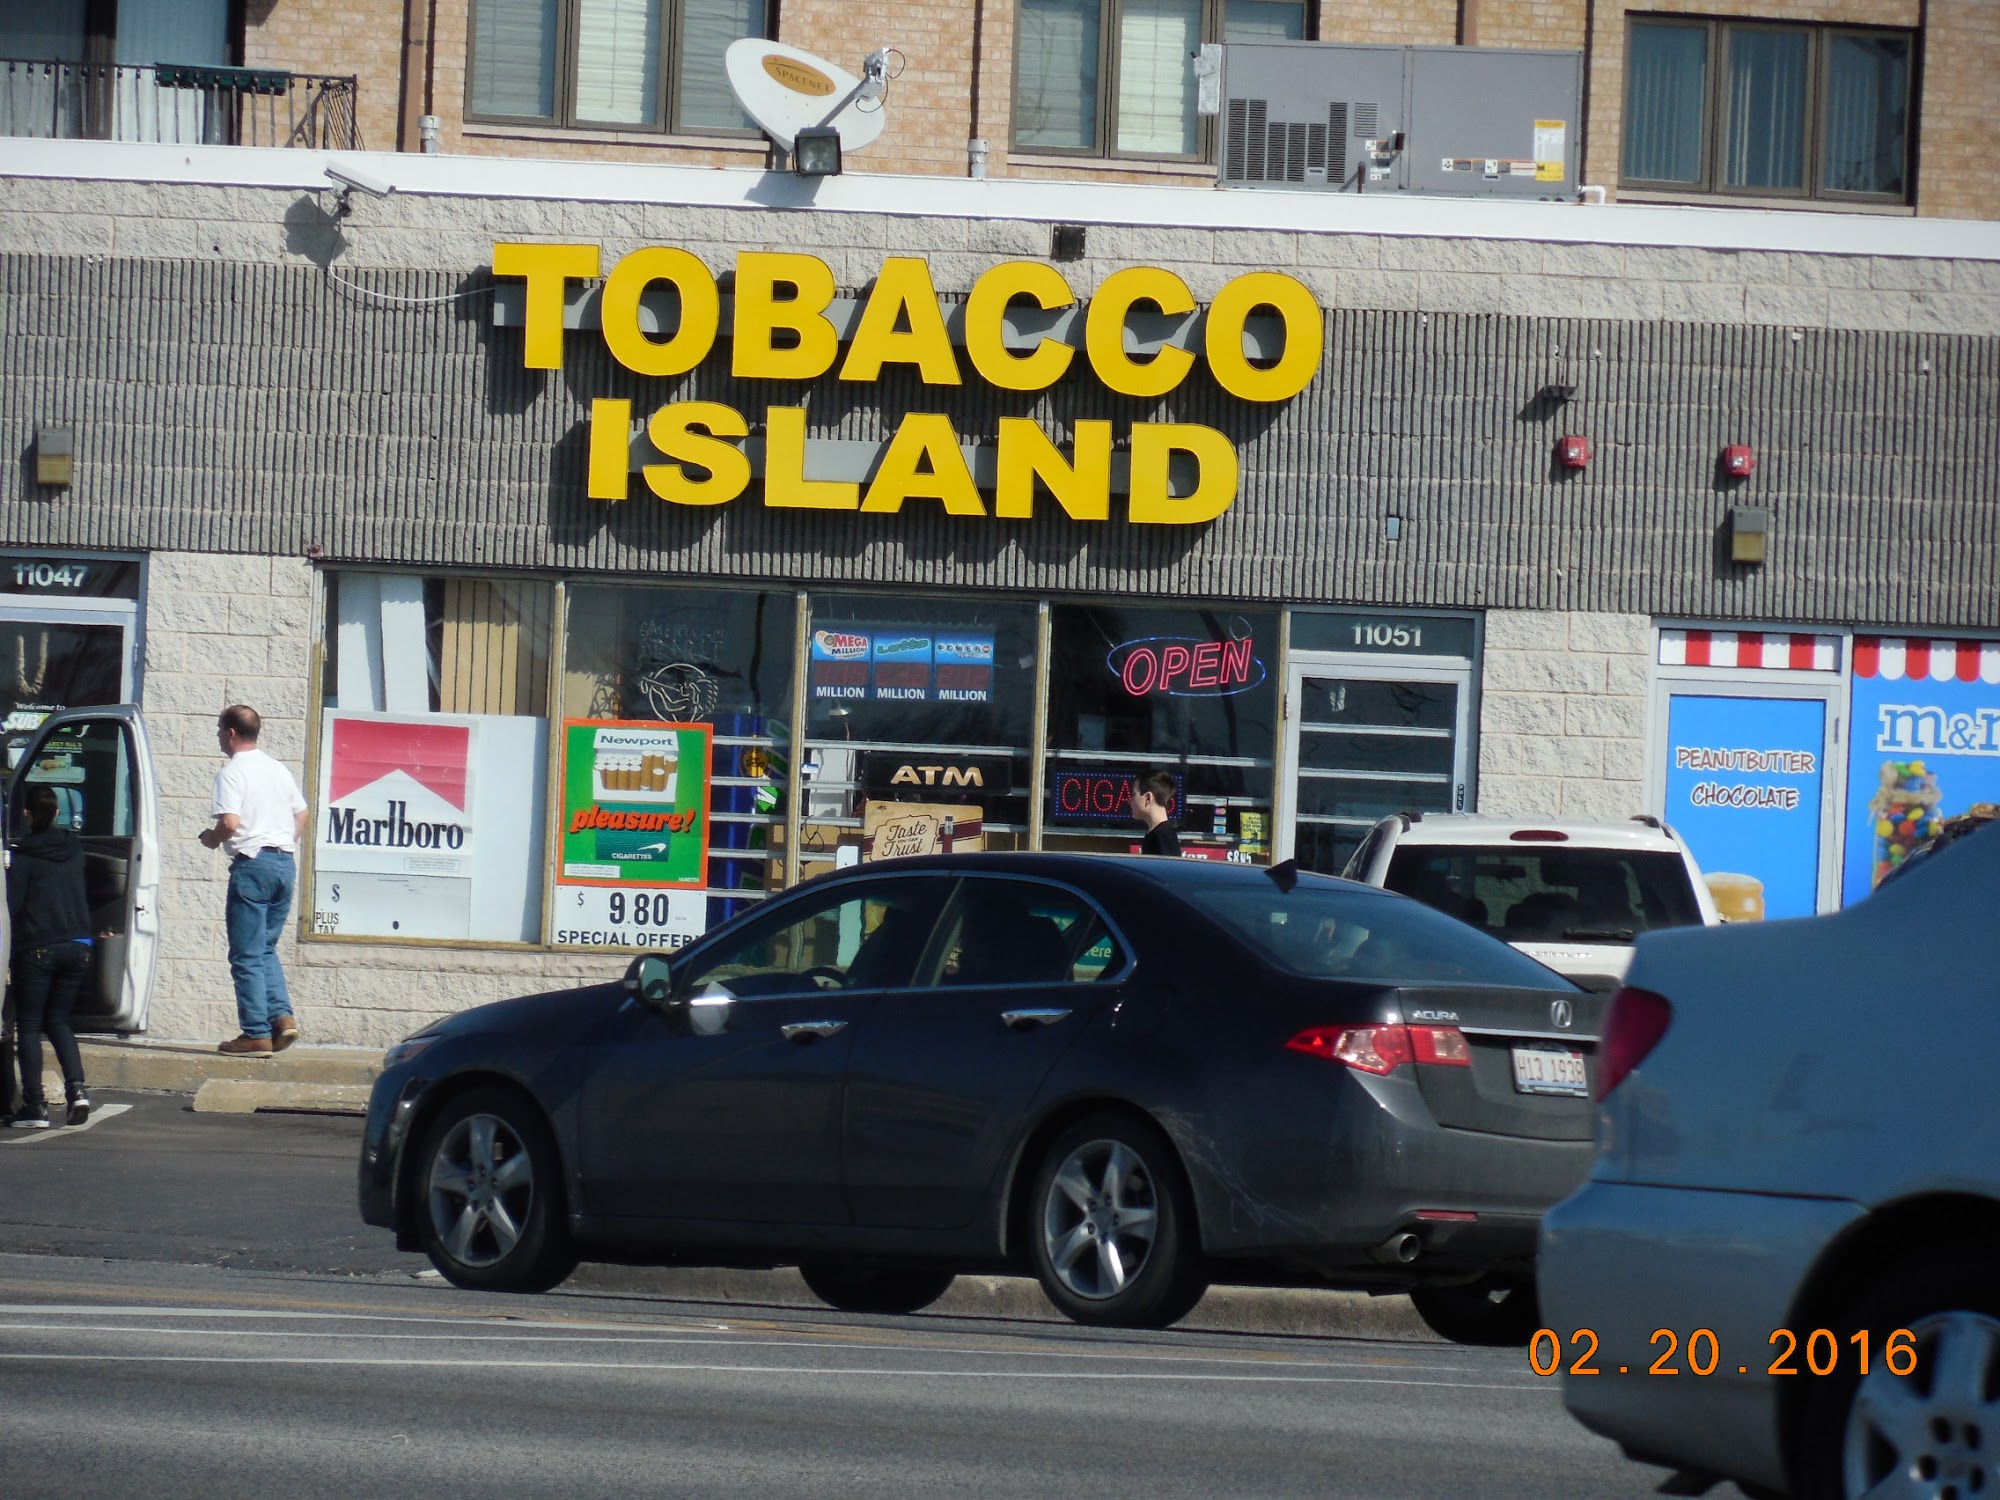 Oaklawn Tobacco Island